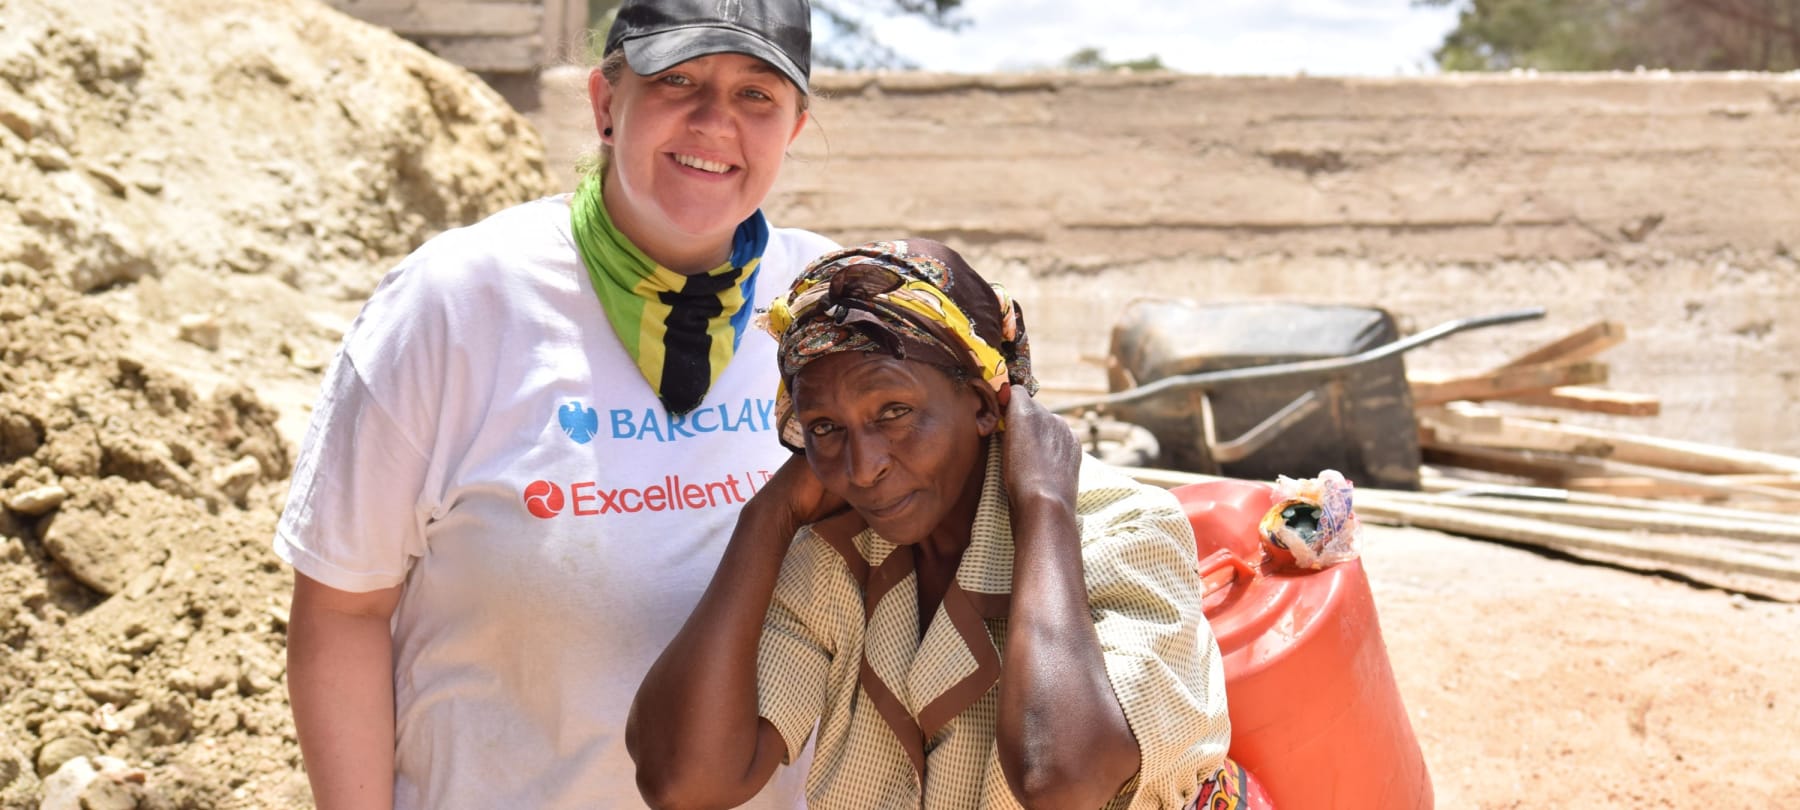 Barclays PBOS – Kenya 2020/21 Expedition